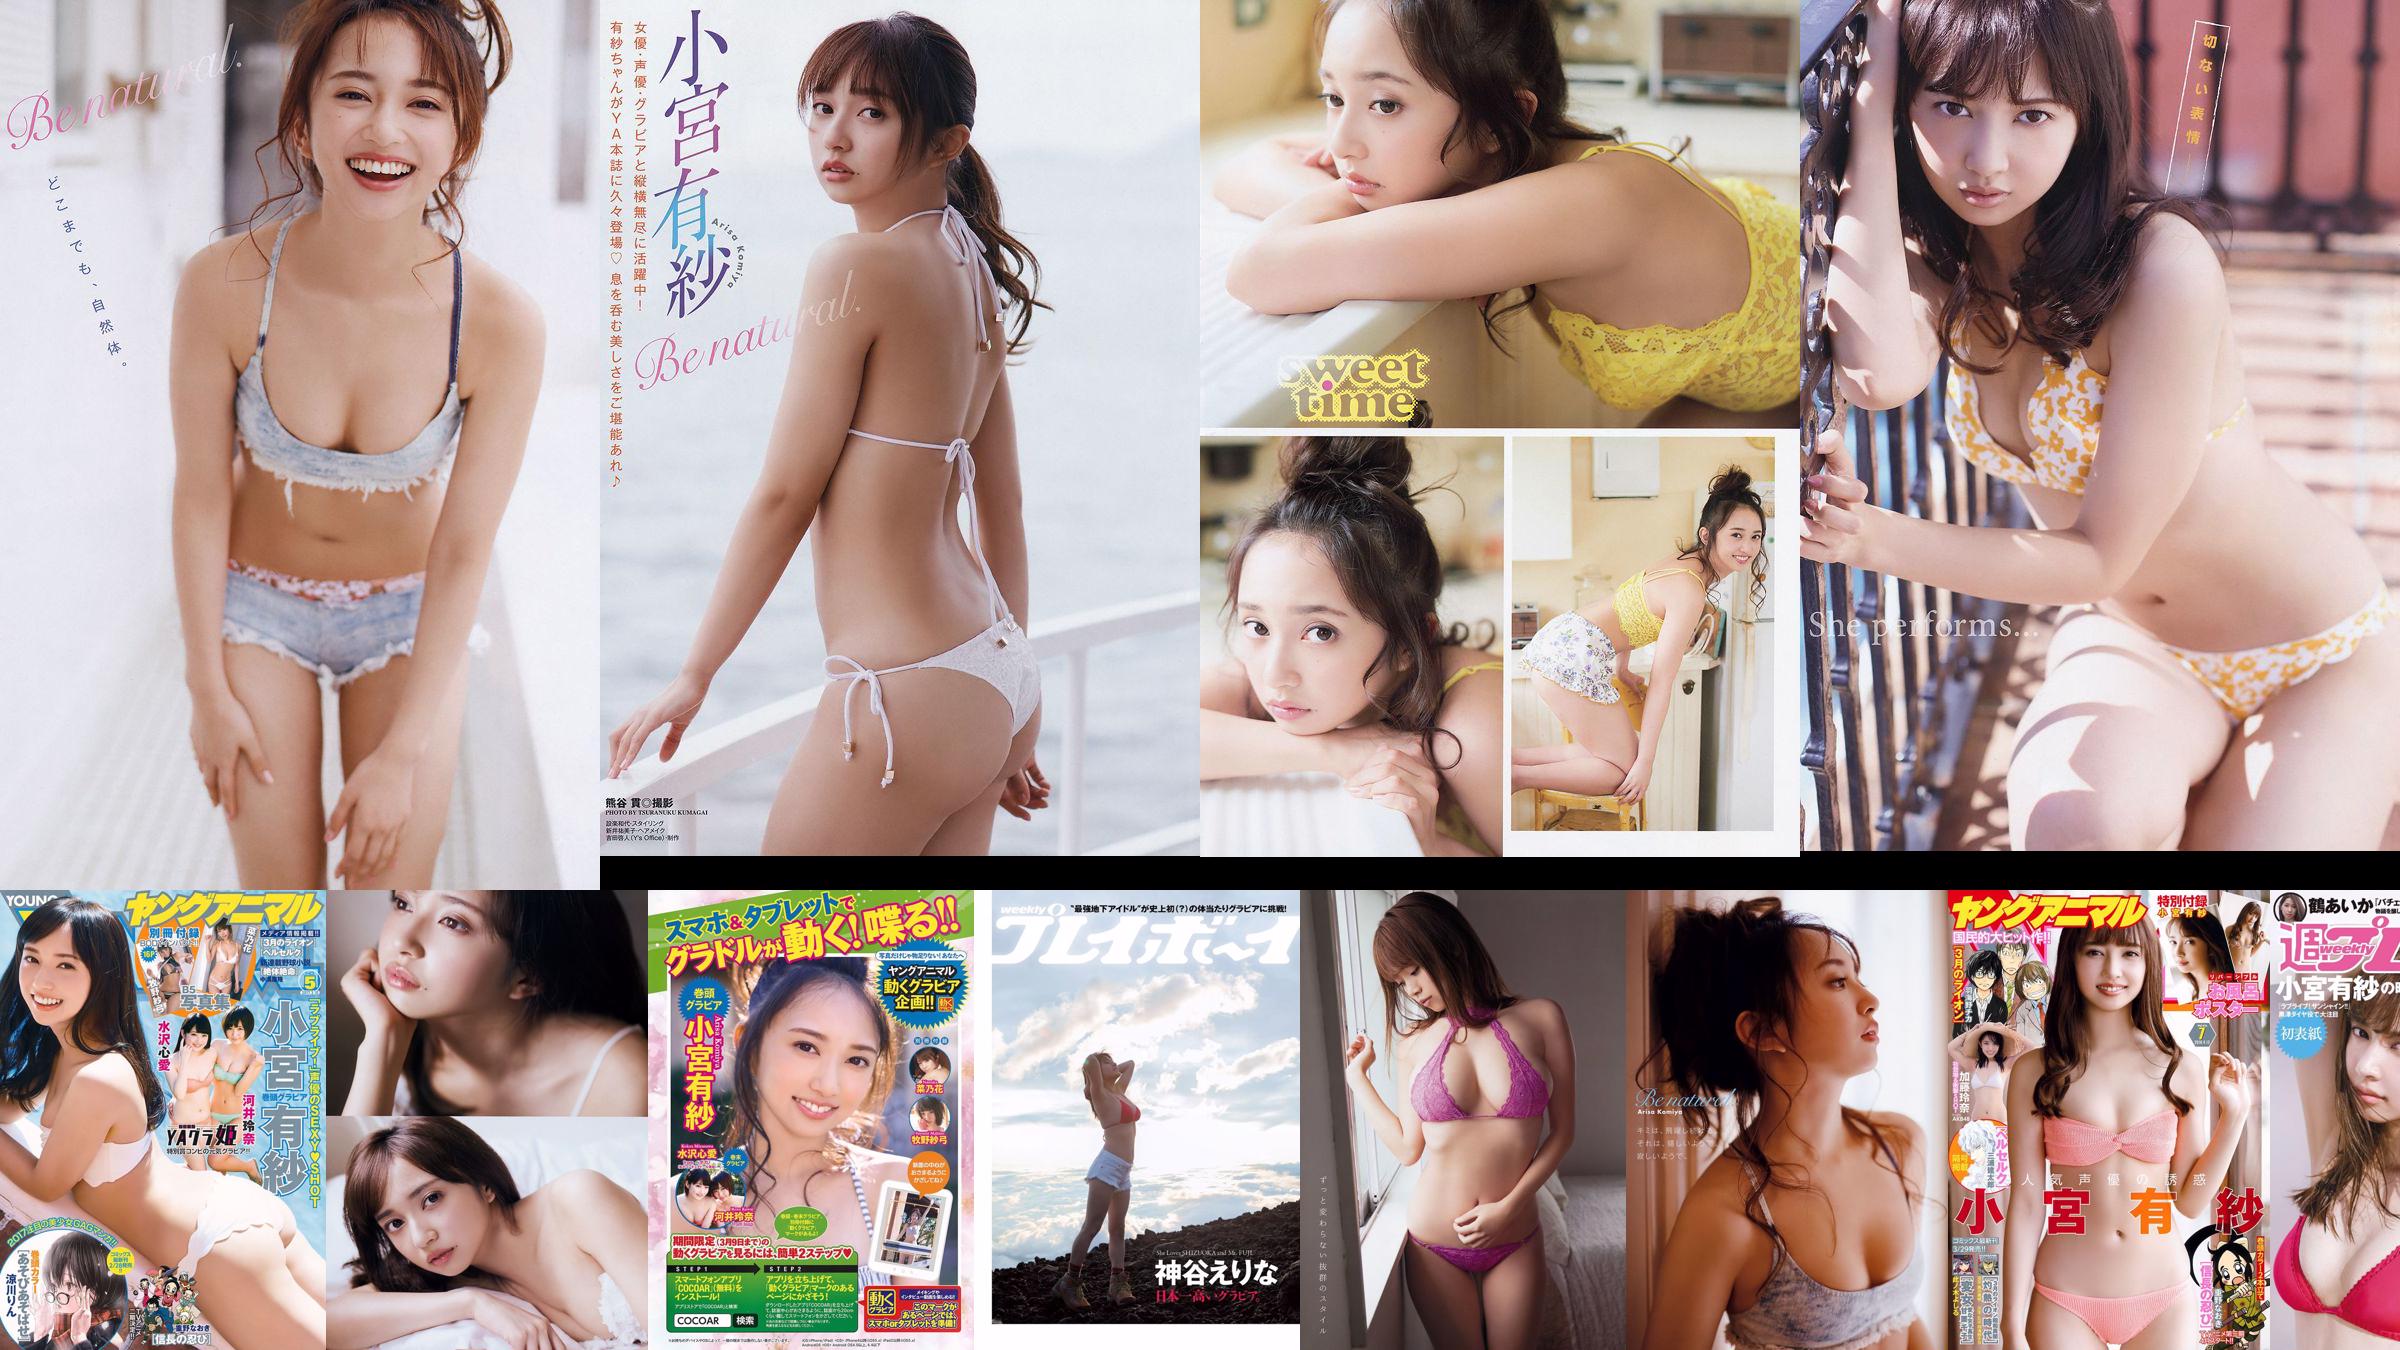 Arisa Komiya Nanoka [Jungtier] 2017 No.20 Photo Magazine No.c09685 Seite 1